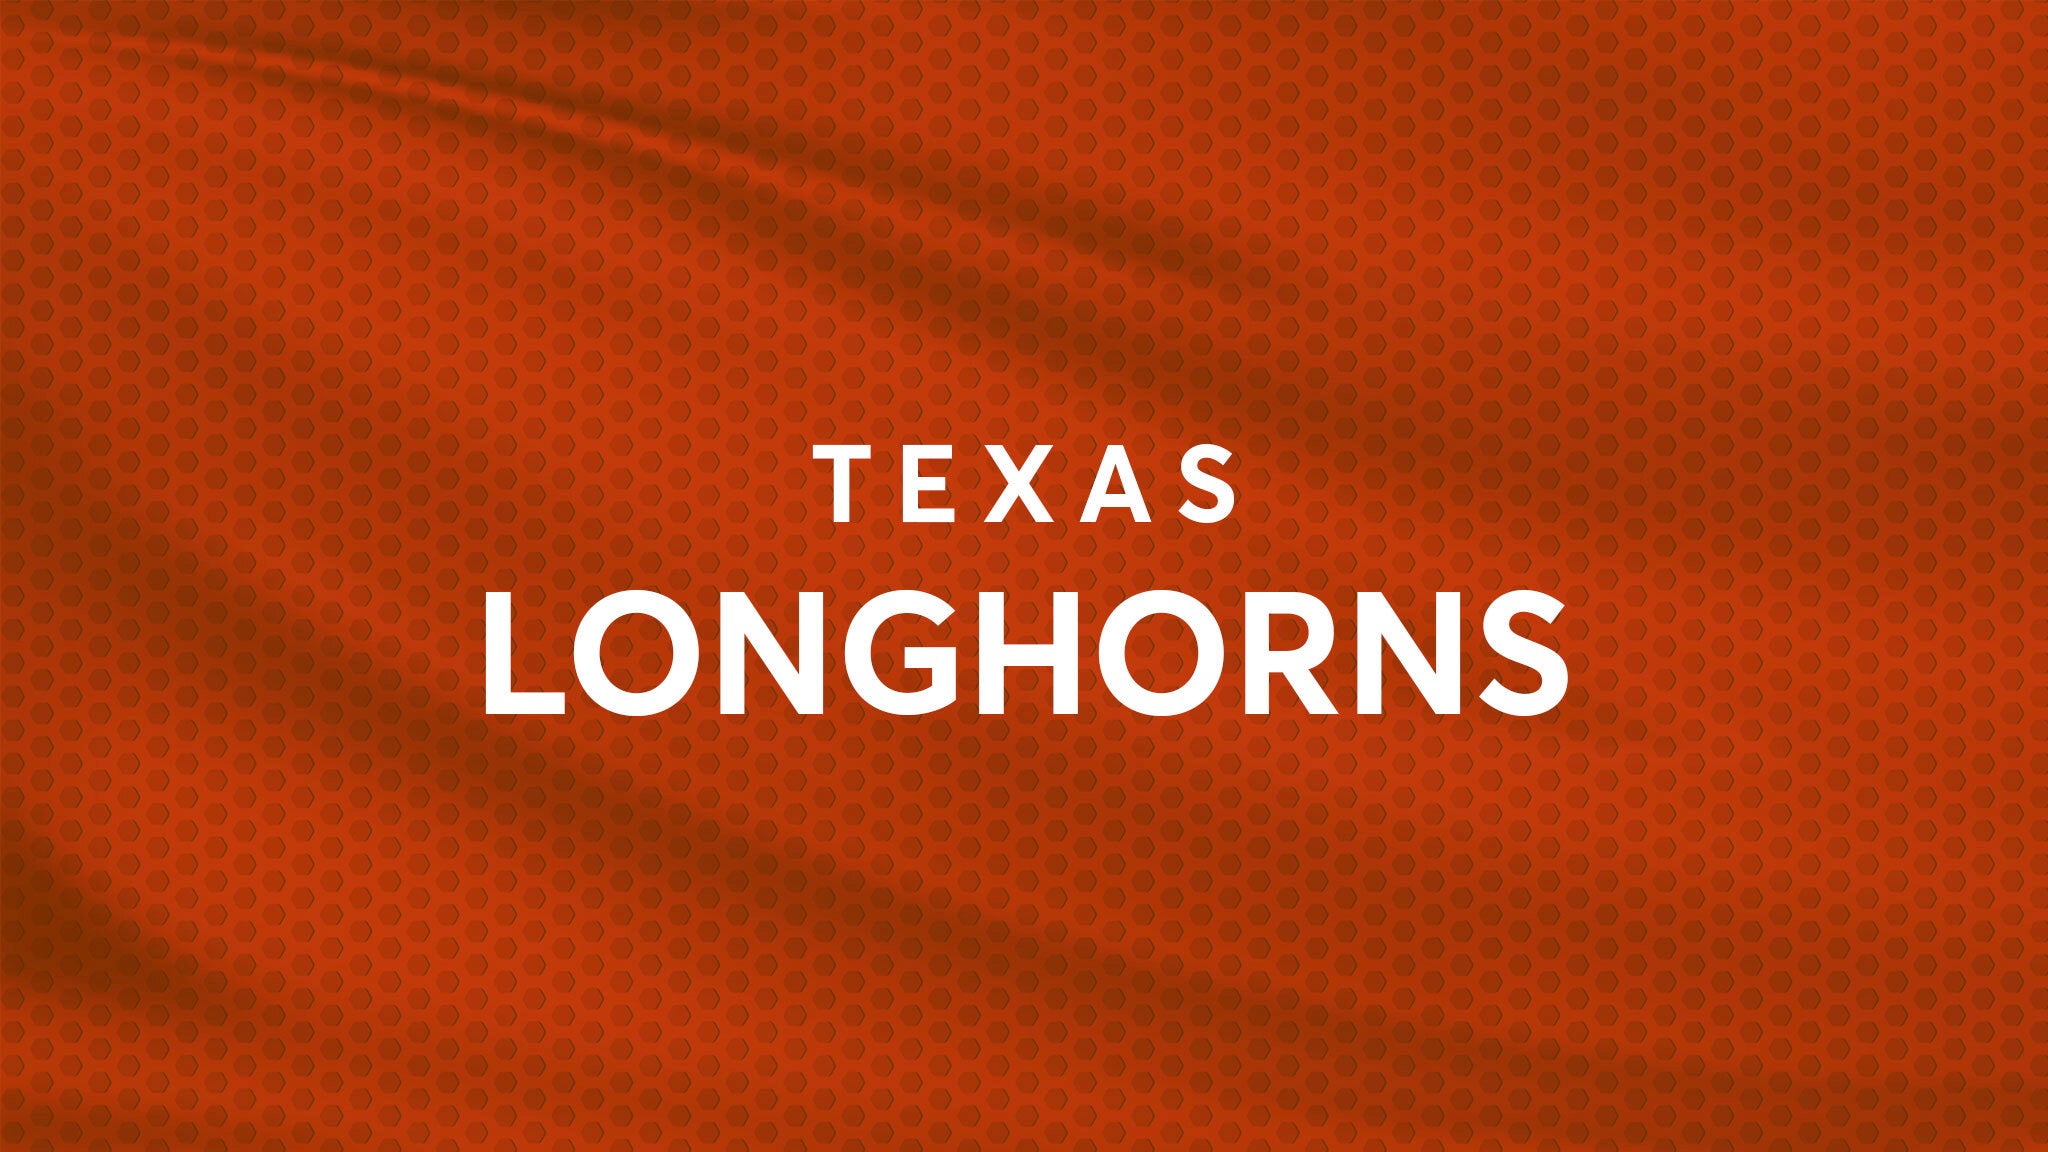 Texas Longhorns Baseball vs. TCU Horned Frogs Baseball